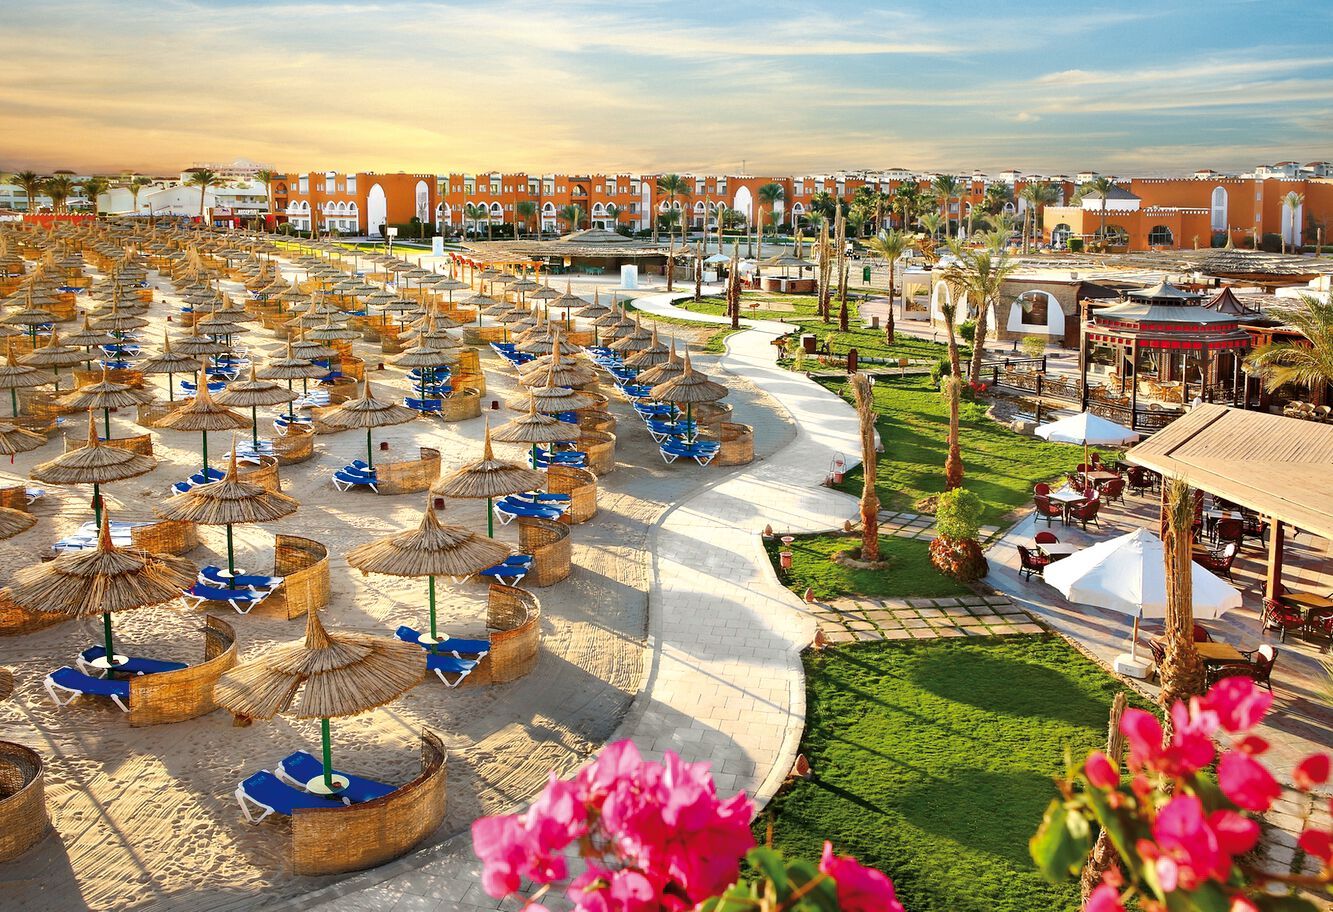 Egypte - Mer Rouge - Hurghada - Hôtel SUNRISE Mamlouk Palace Resort 5*